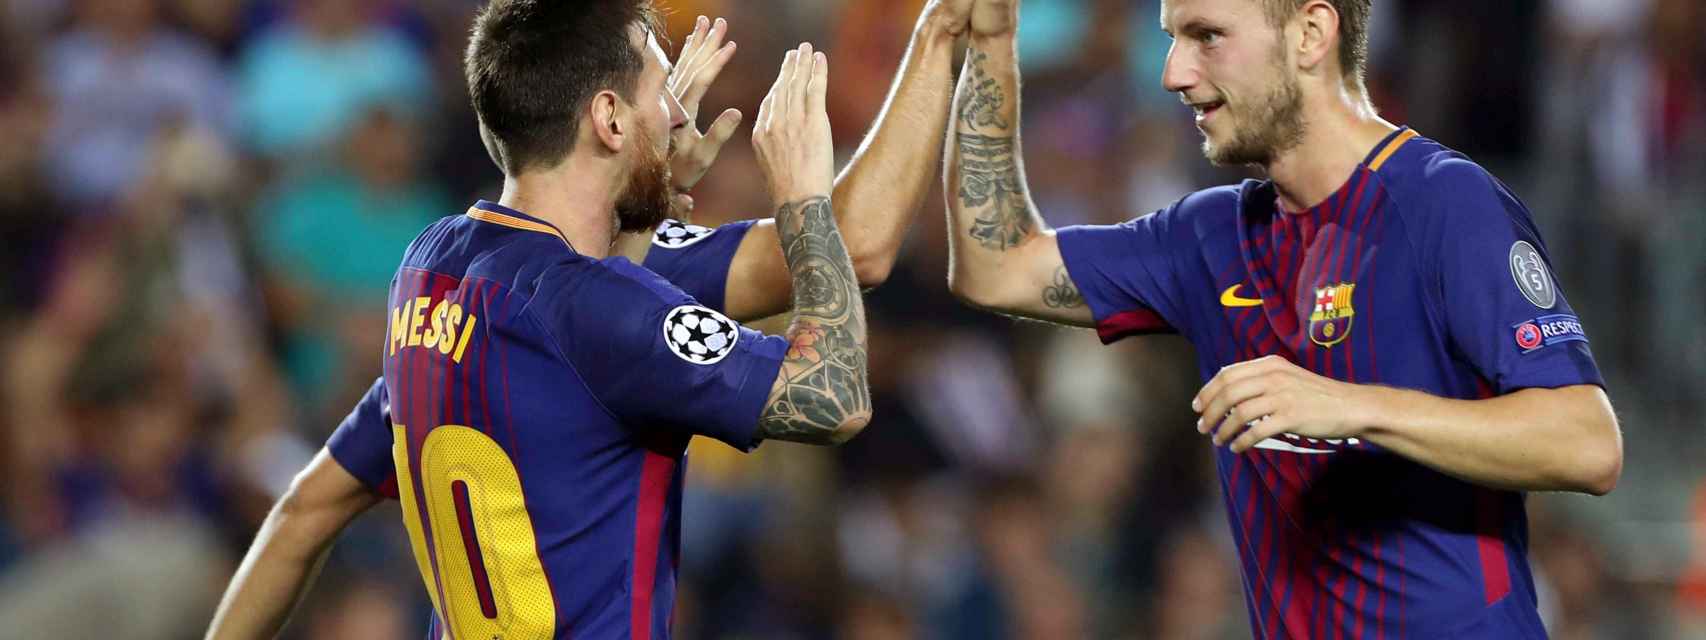 Messi y Rakitic se saludan en un partido.